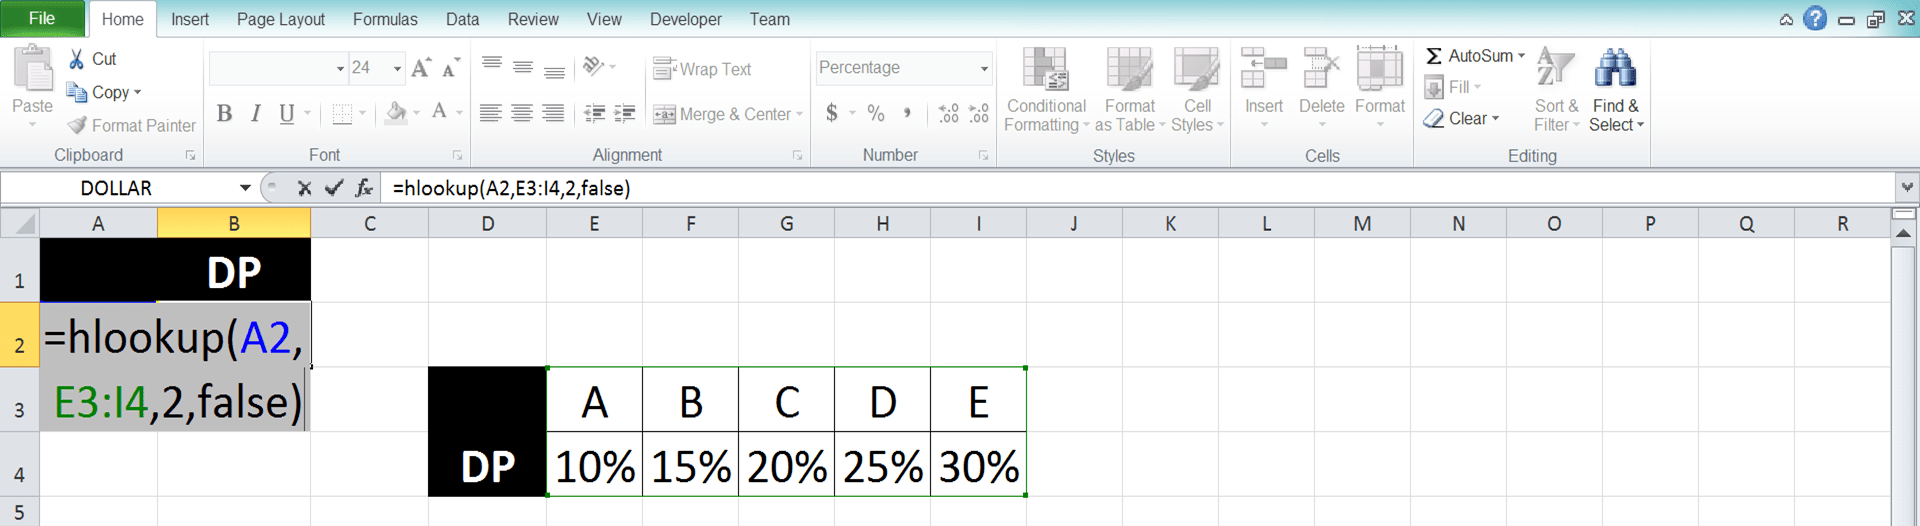 Cara Menggunakan Rumus VLOOKUP dan HLOOKUP di Excel: Fungsi, Contoh, dan Penggunaannya - Screenshot Langkah HLOOKUP 7